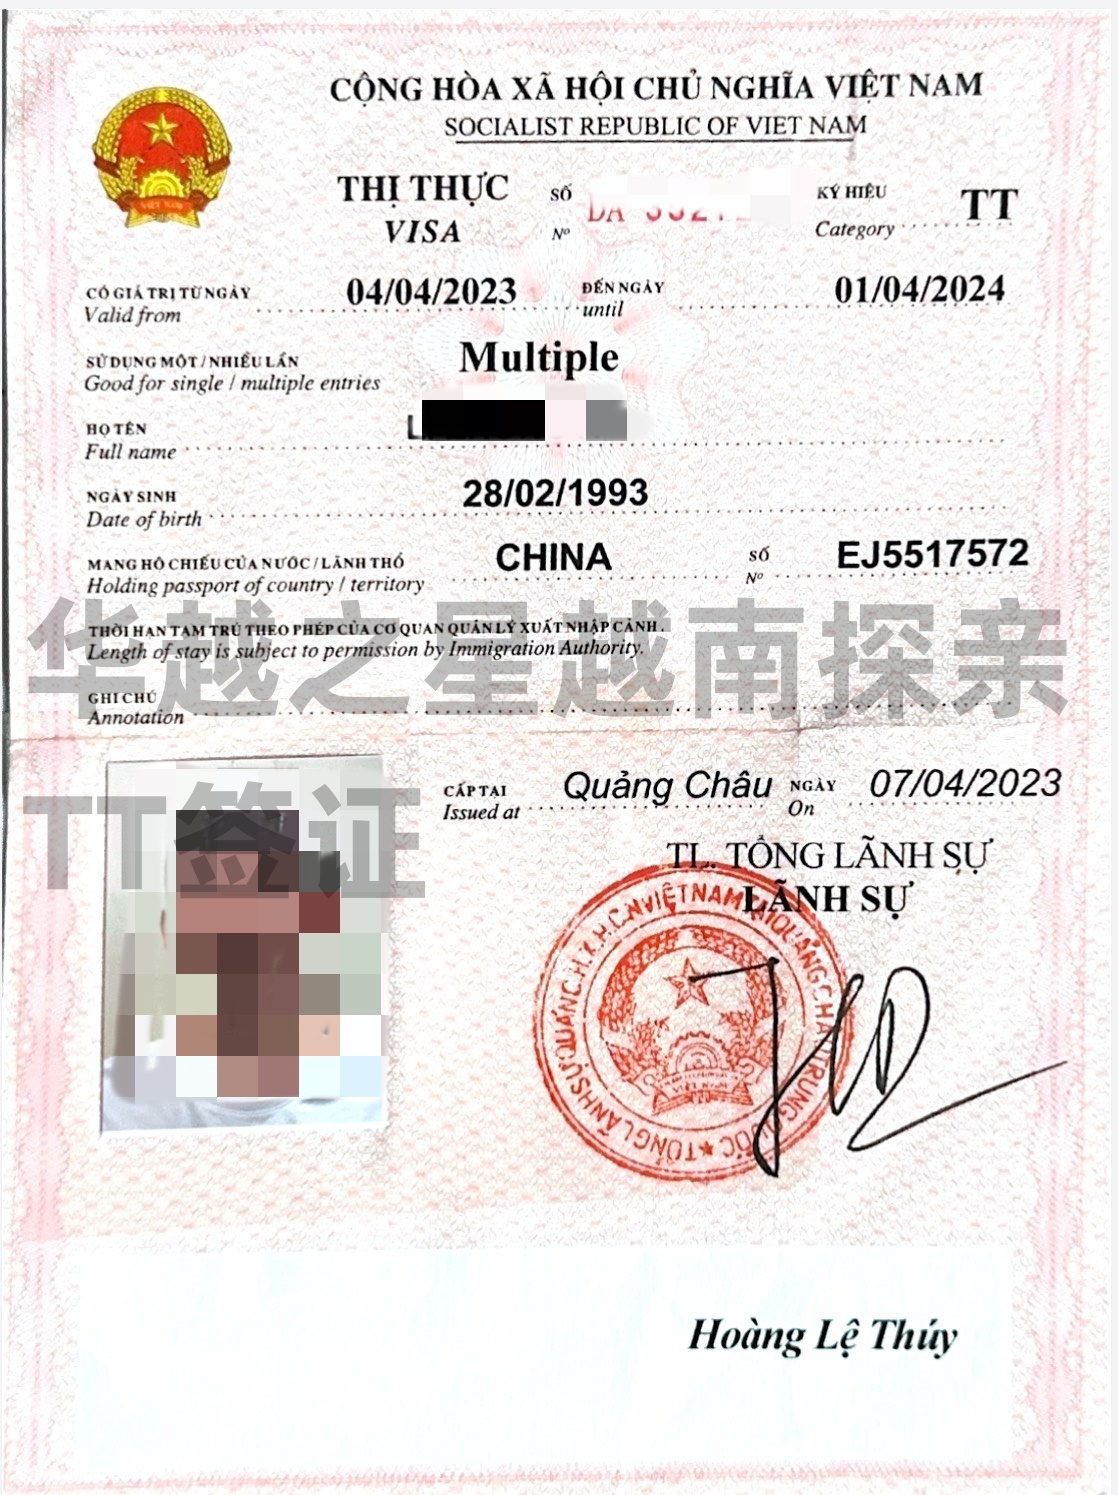 越南tt签证2.jpg